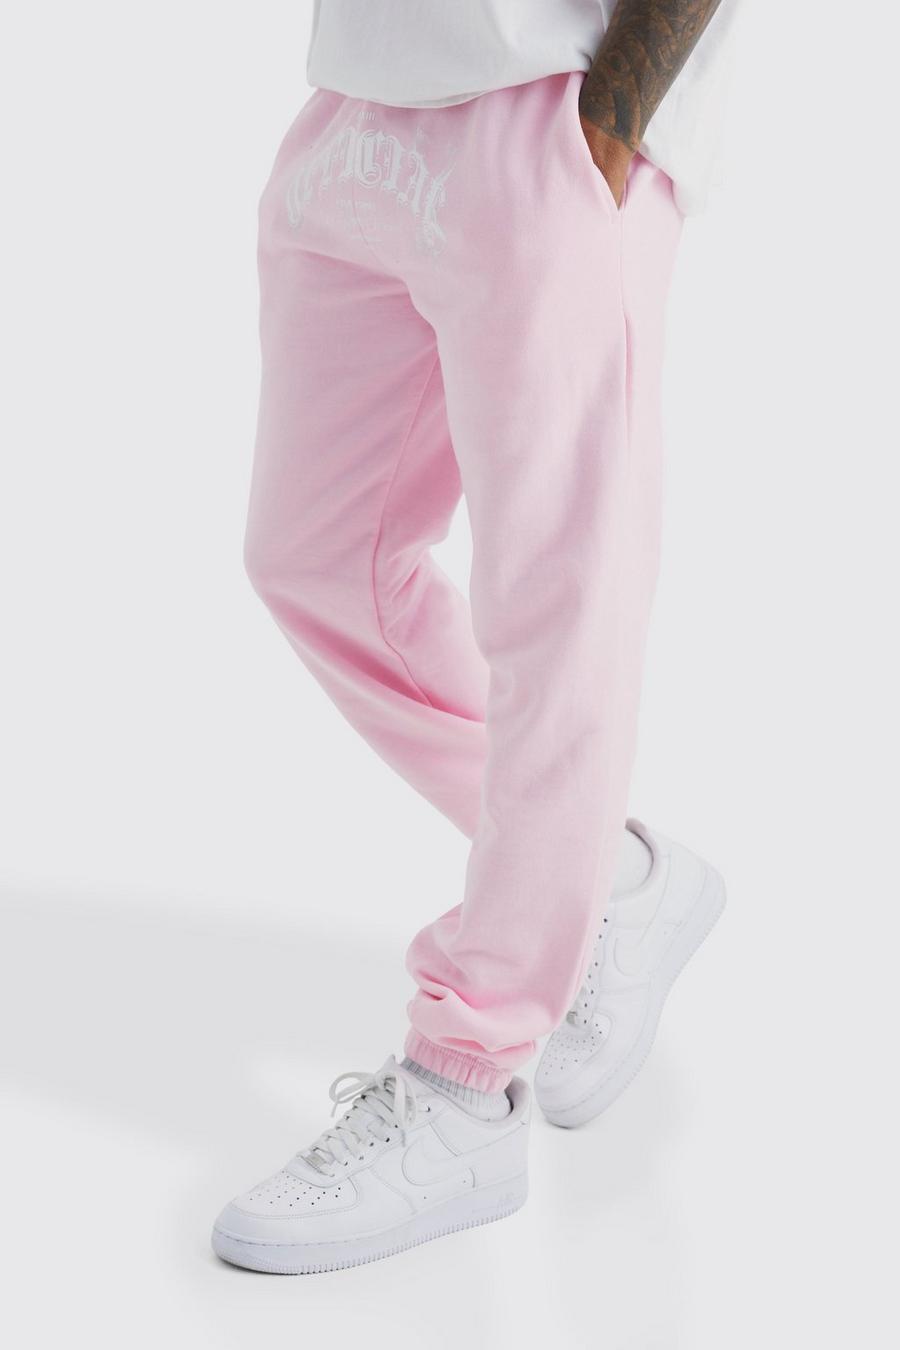 Pantalón deportivo Official con estampado gráfico de humo, Light pink